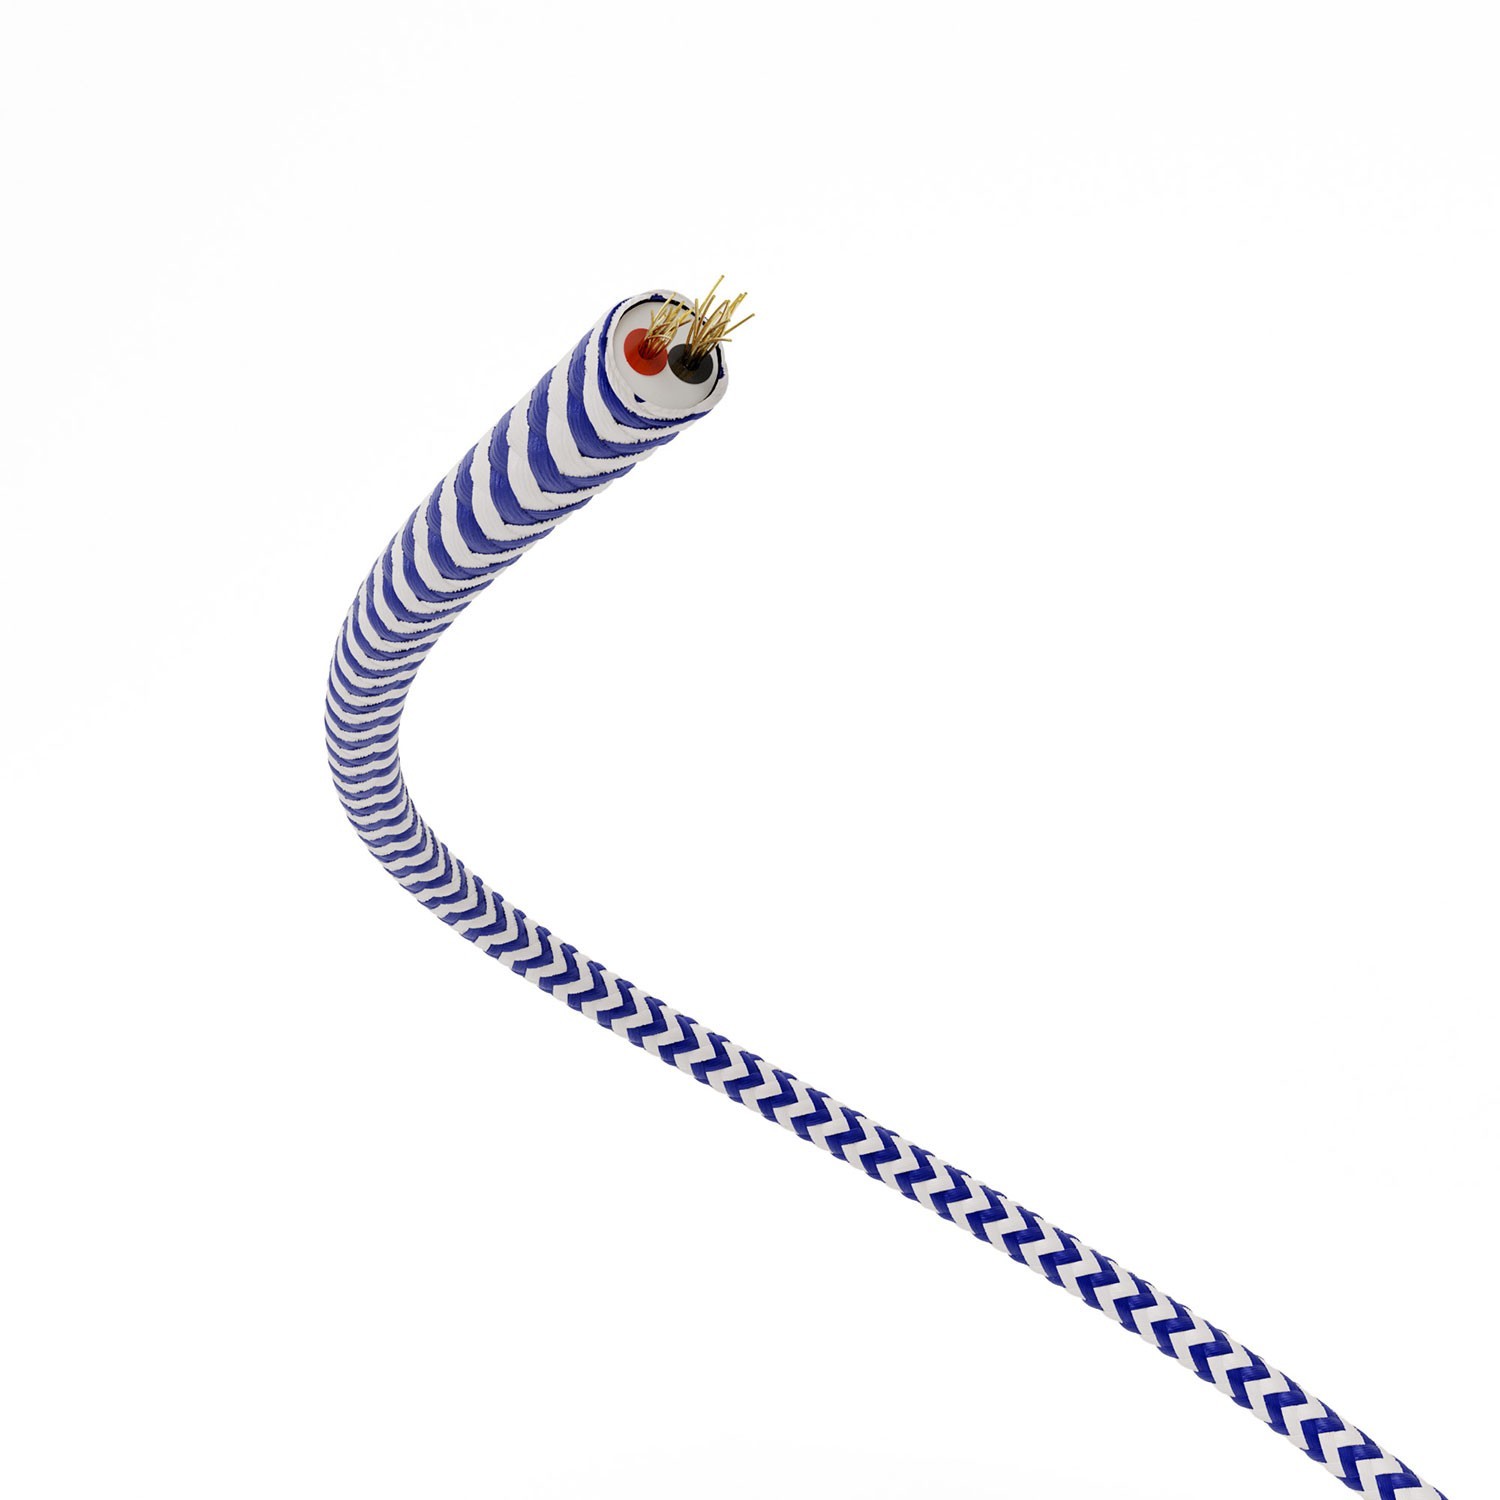 Cable de alimentación Extra Low Voltage revestido de tejido Zig Zag Blanco Azul RZ12 - 50 m